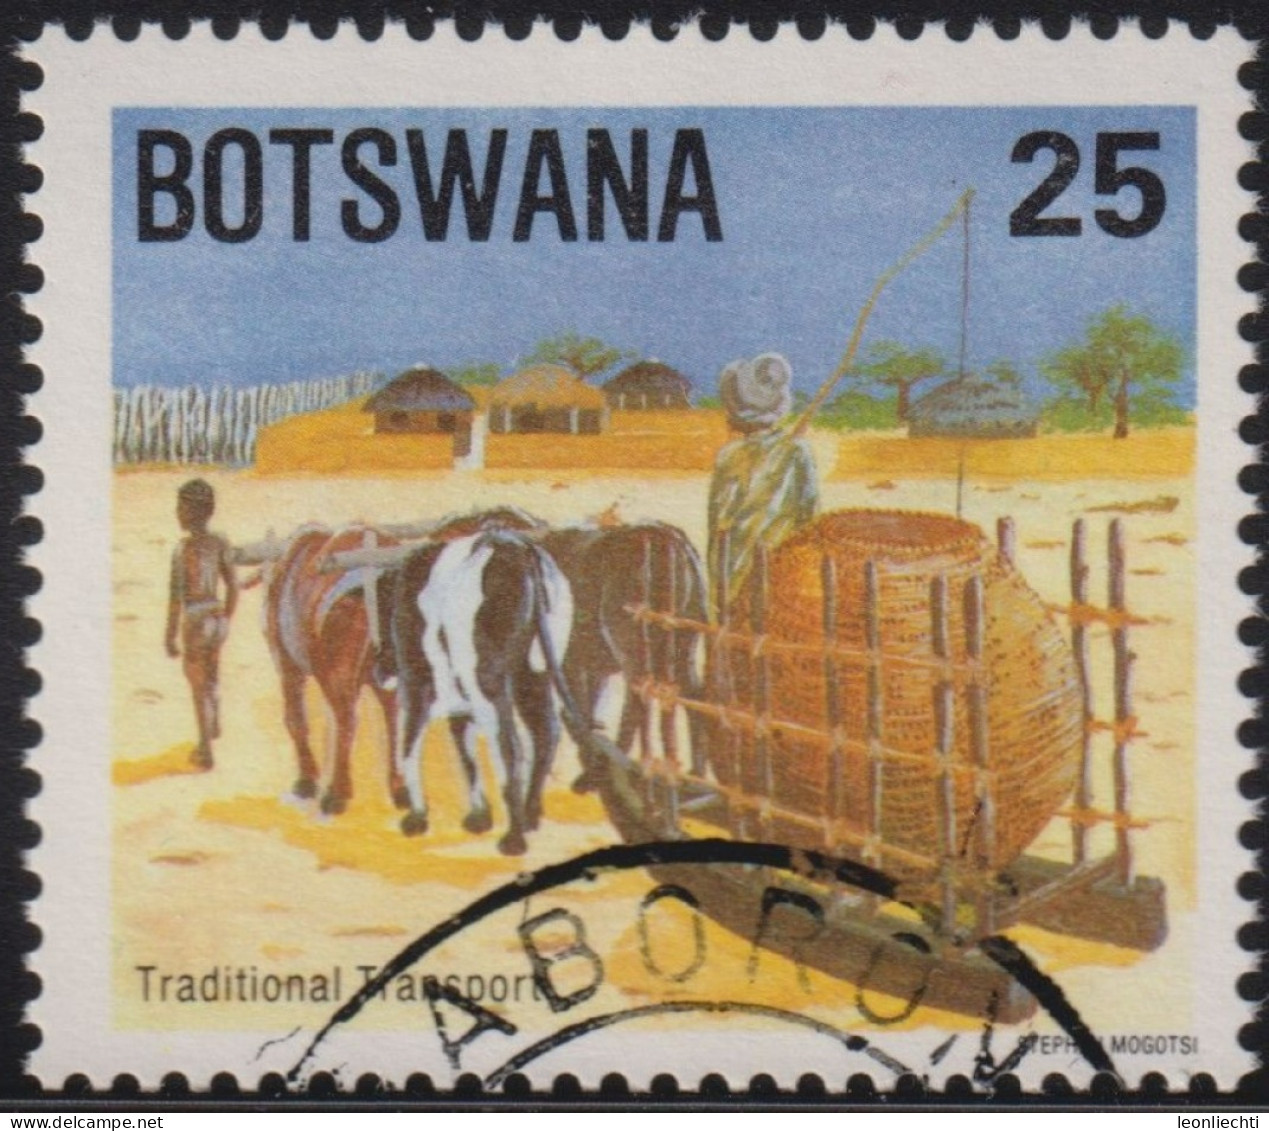 1984 Botswana ° Mi:BW 342, Sn:BW 346, Yt:BW 494, Sg:BW 559, Sled, Schlitten, Traditional Transport, Kühe - Botswana (1966-...)